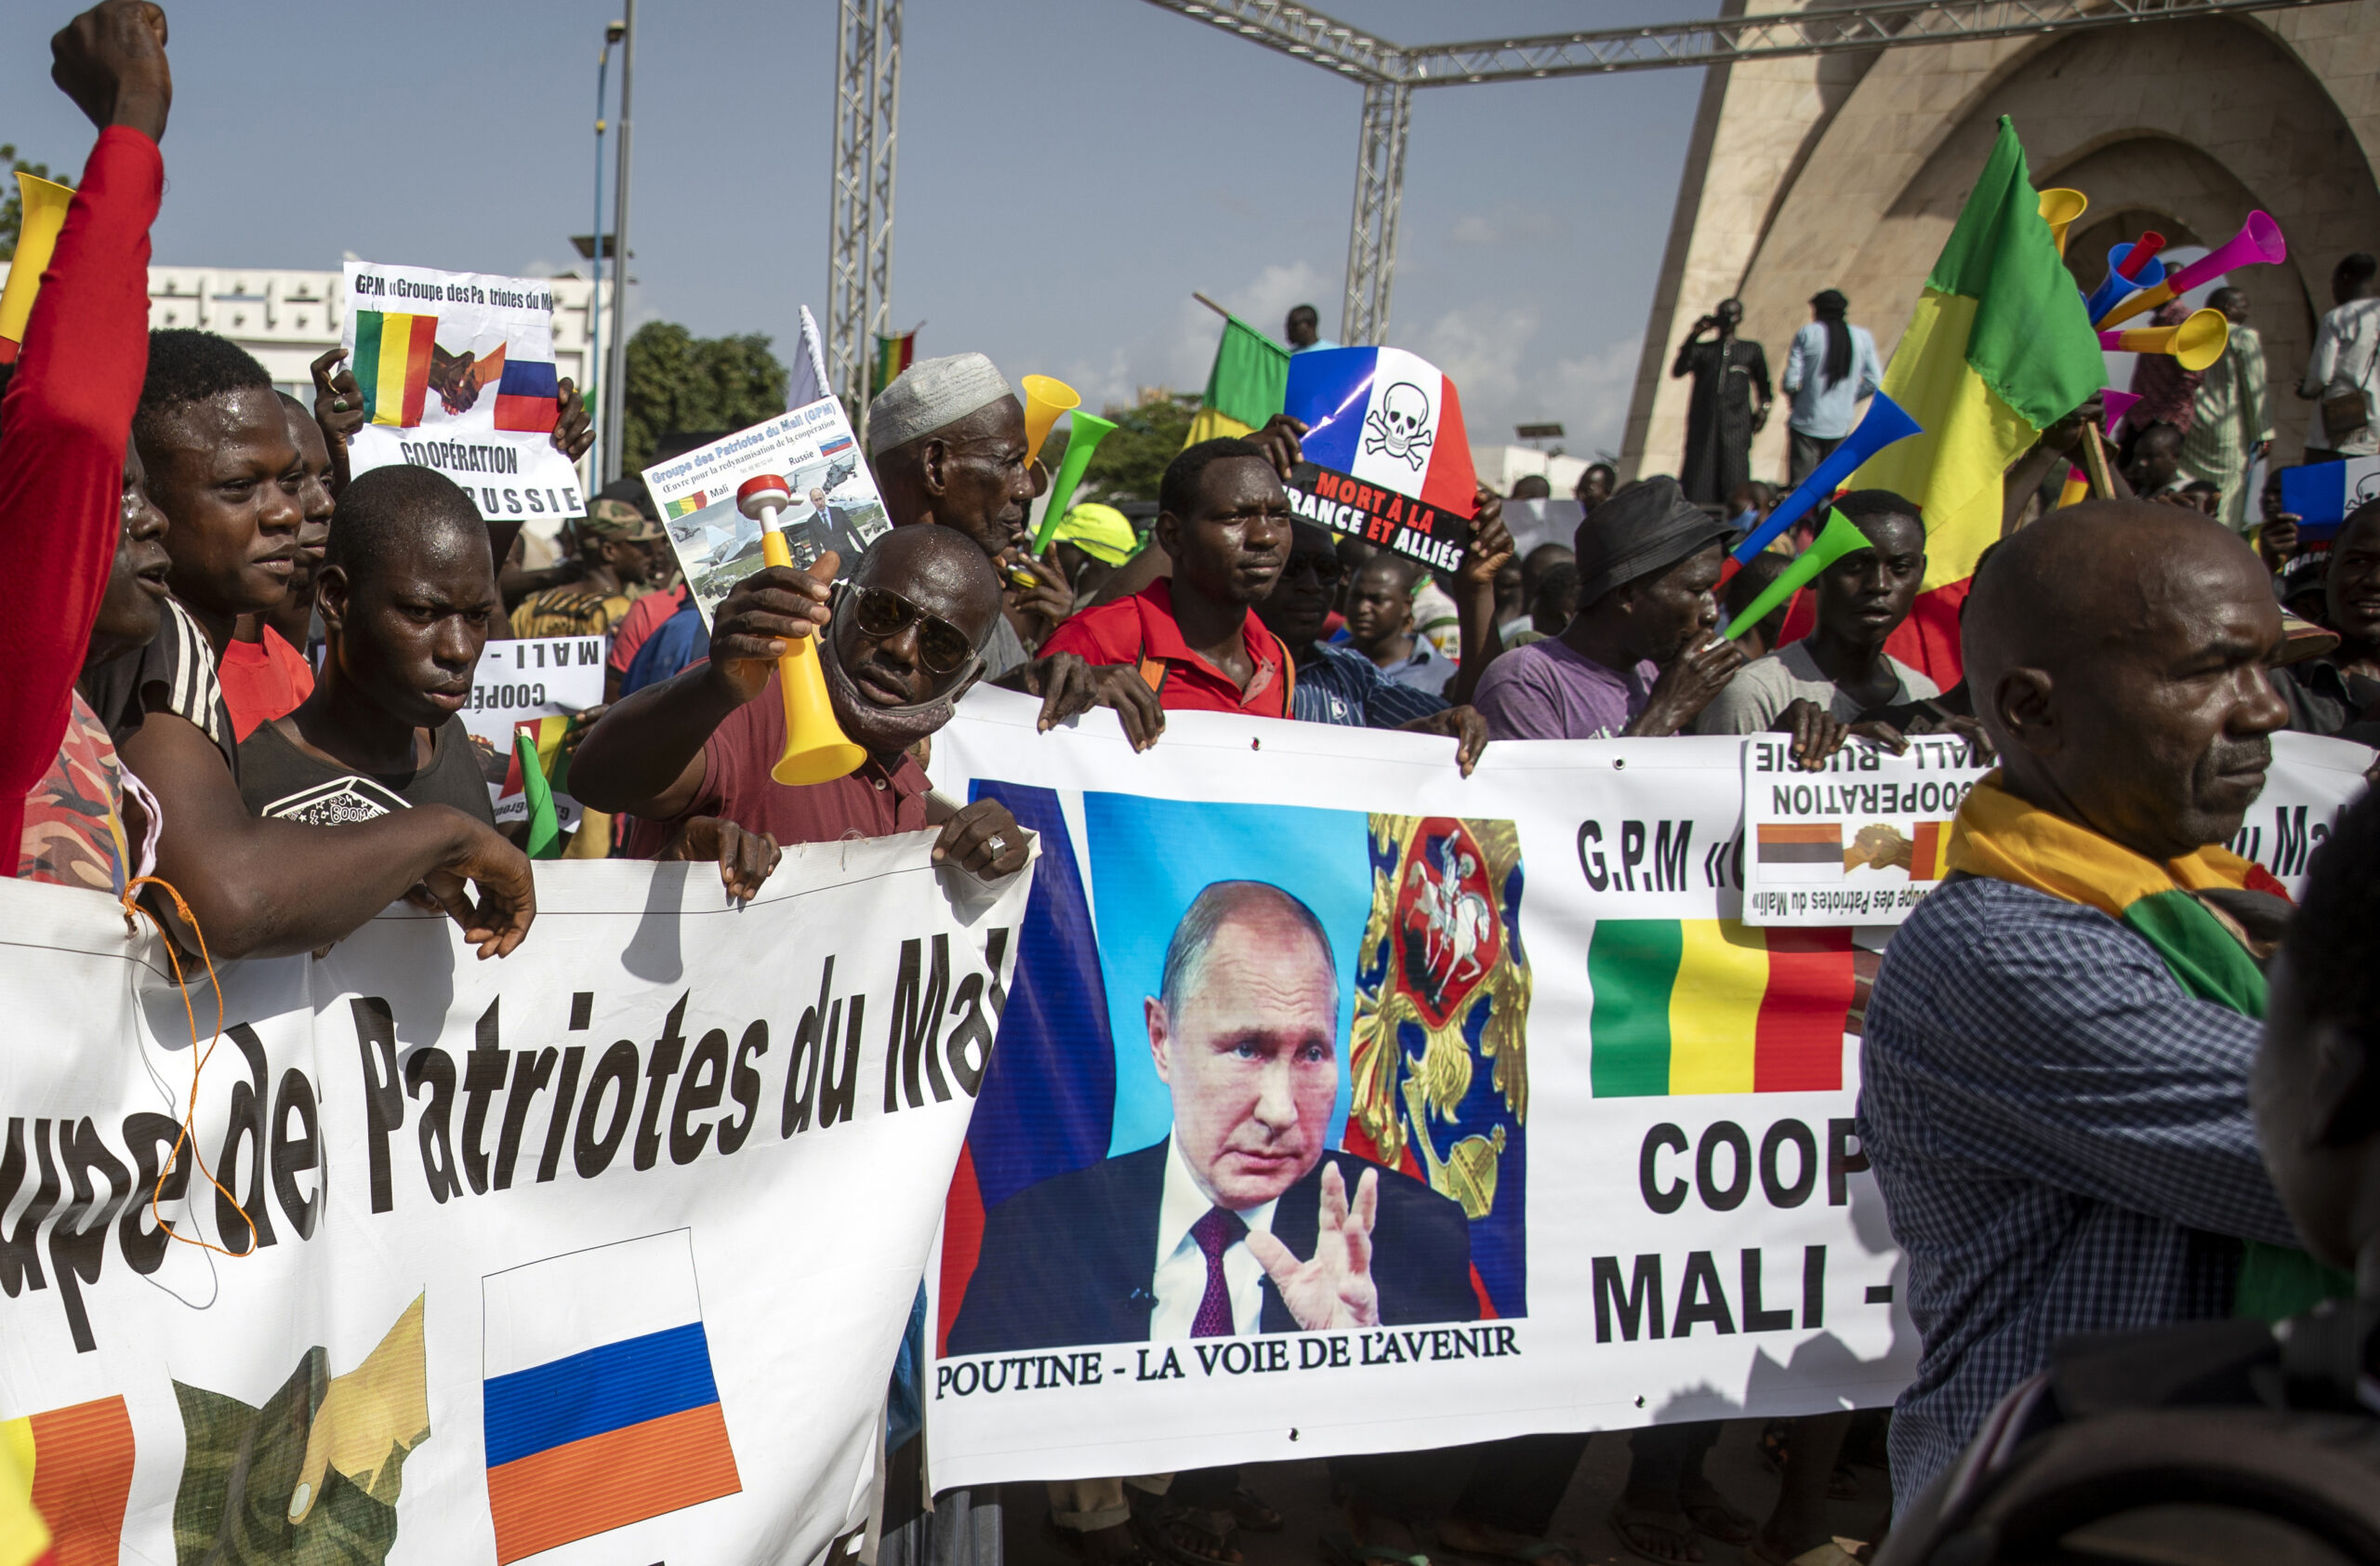 ΟΗΕ: Η Ρωσία δηλώνει ότι θα συνεχίσει να στηρίζει το Μαλί – H στρατιωτική χούντα συνεργαζόταν με την Βάγκνερ